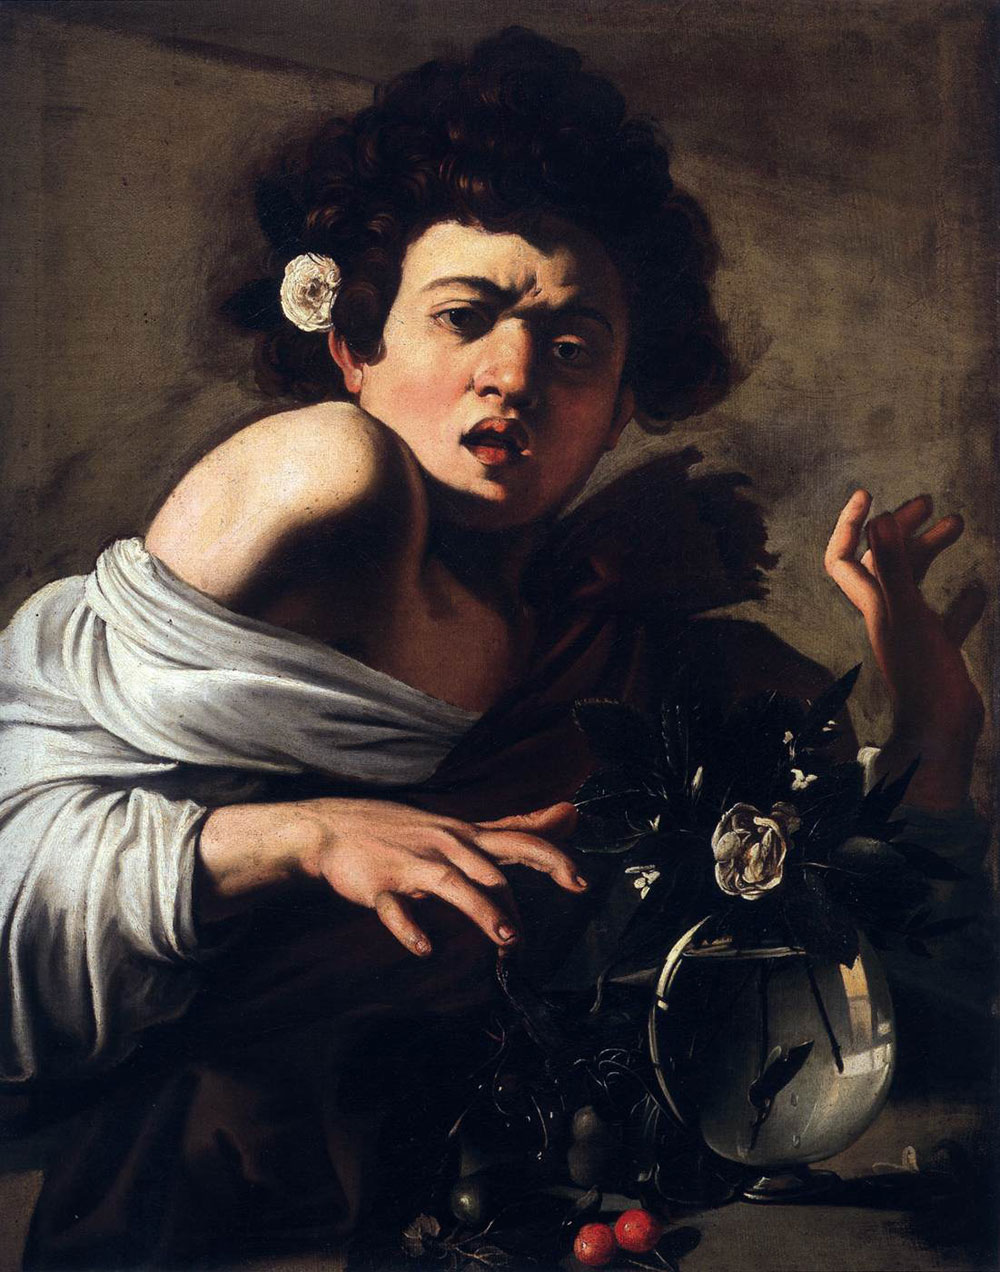 Une grande exposition consacrée à Caravaggio à Milan en septembre